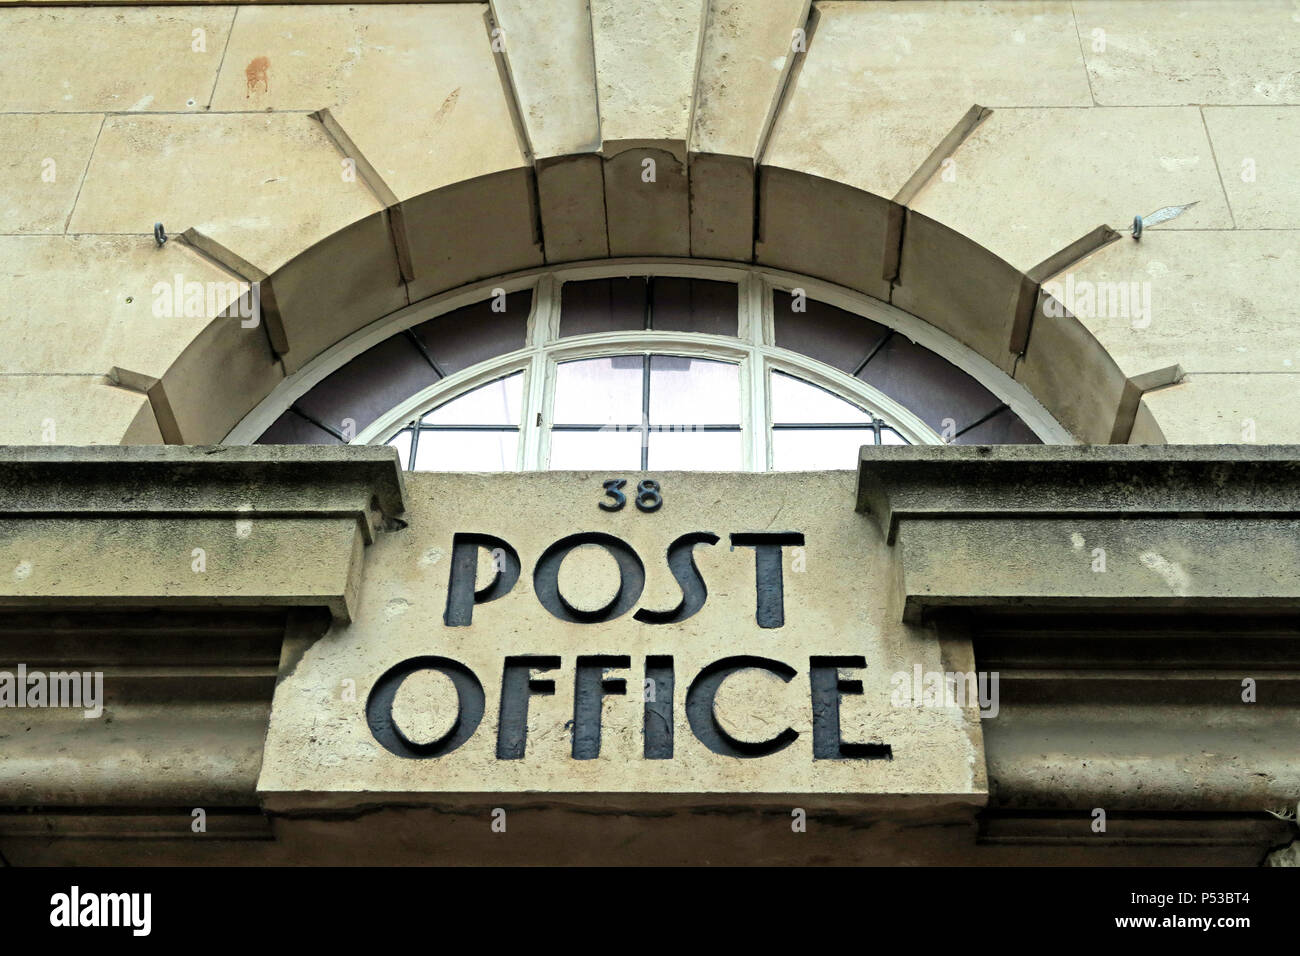 38 Bureau de poste - Demander à l'italien - l'ancien bureau de poste, 38 North St, Taunton, Somerset, England, UK, TA1 1AB Banque D'Images